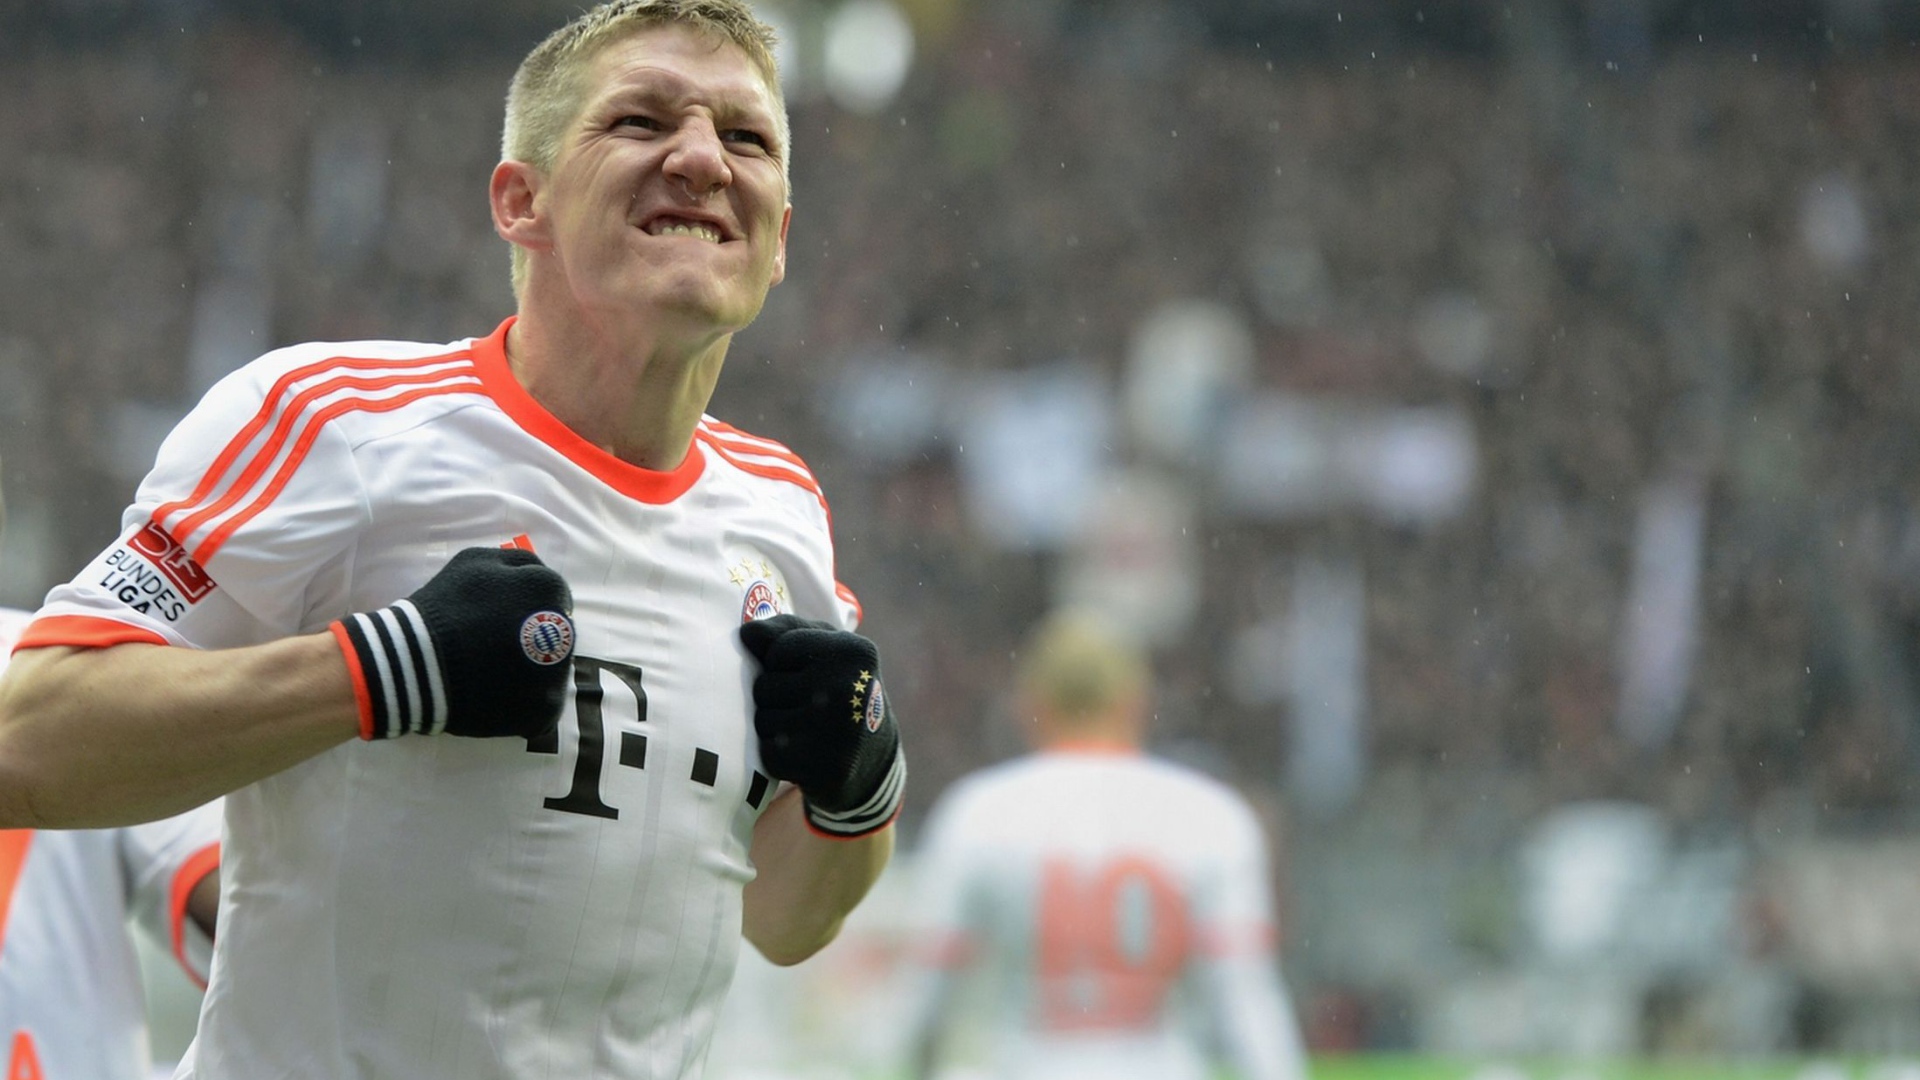 Bayern Bastian Schweinsteiger scored a goal